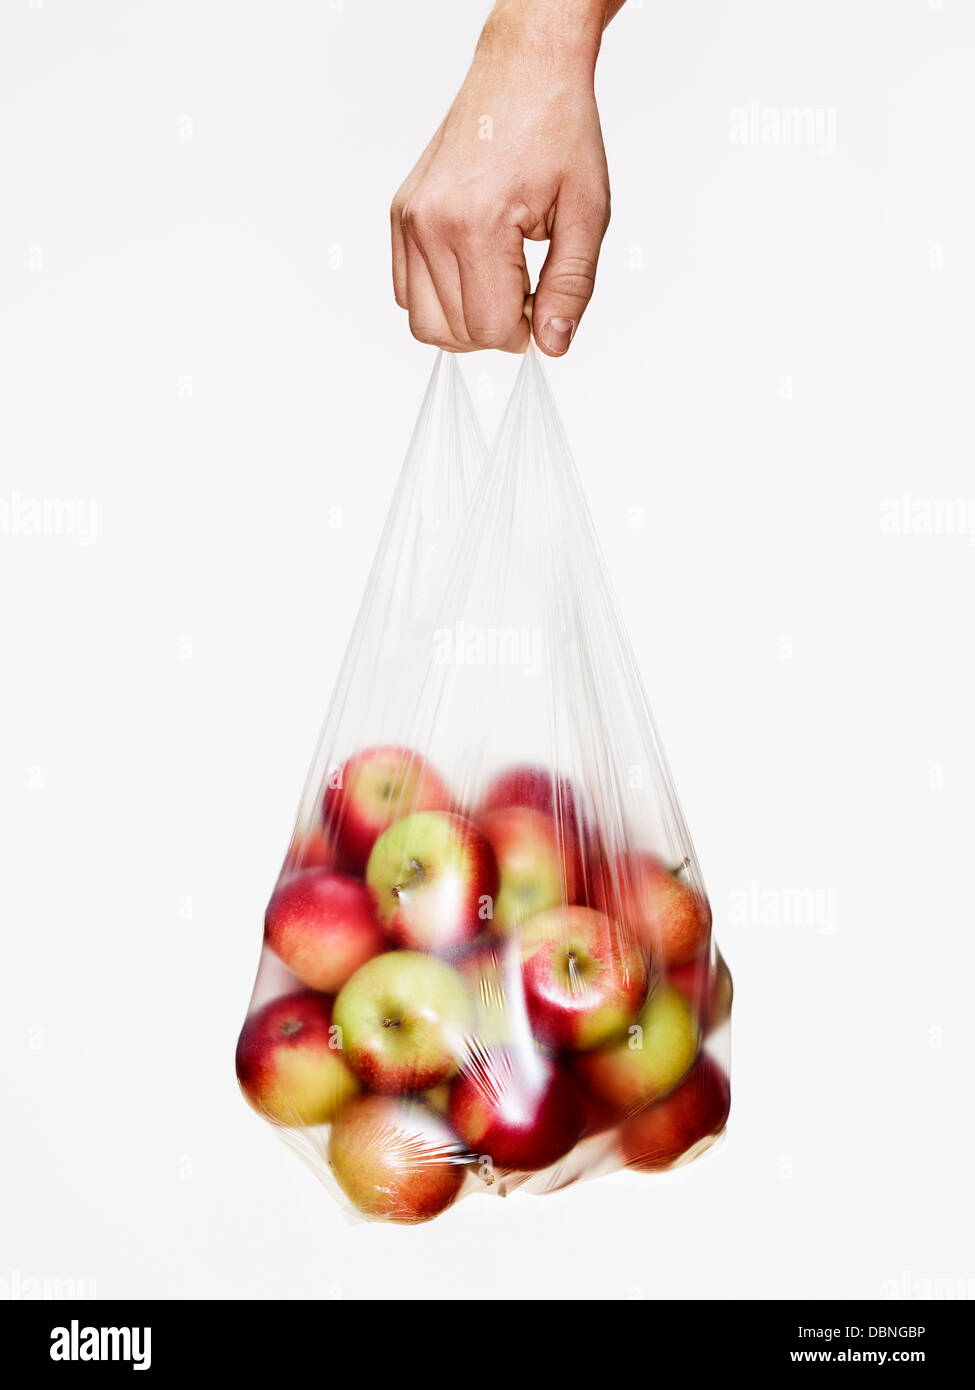 PC Organics Gala Apples 3Lb Bag - 3 lb bag | No Frills Online